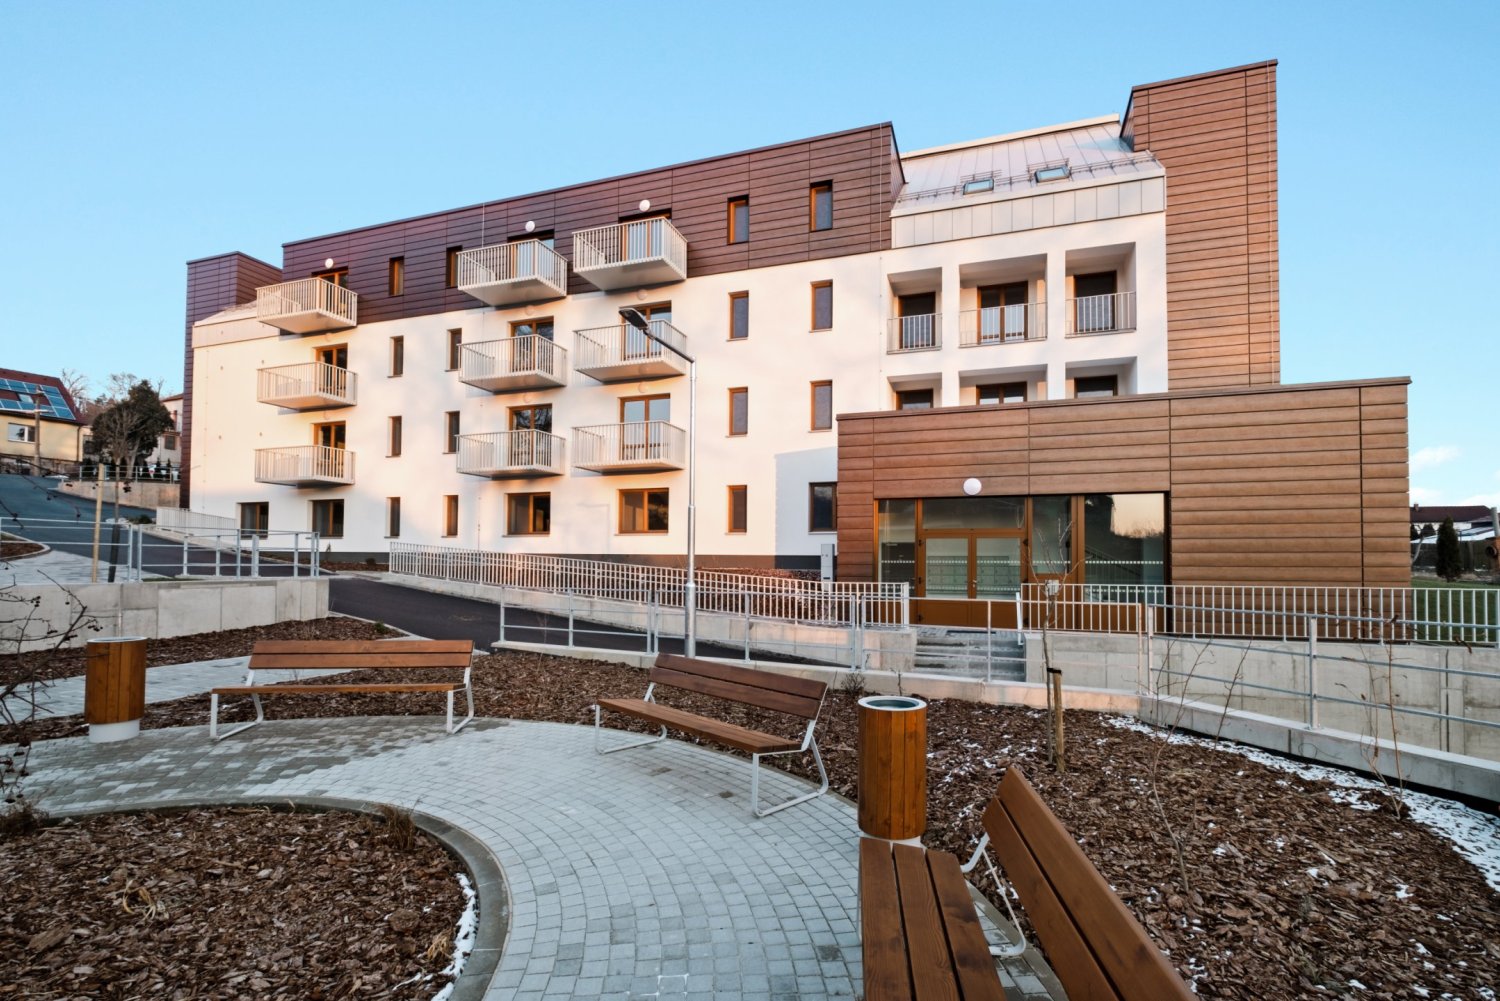 Společnost BUILDINGcentrum - HSV staví občanské i bytové stavby